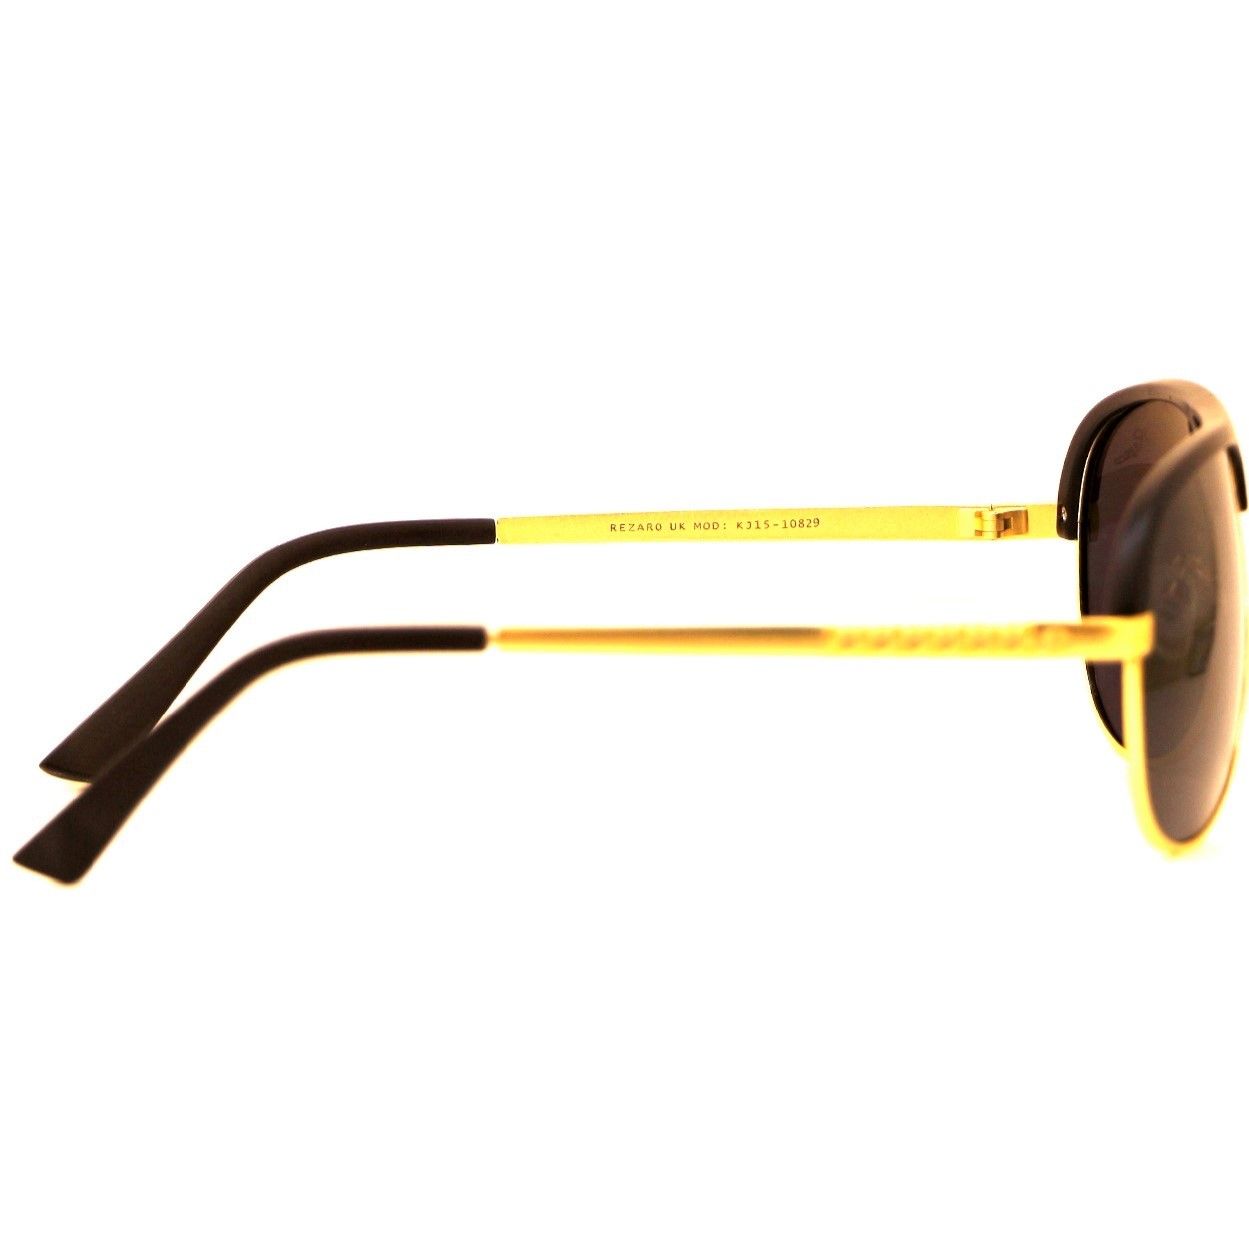 عینک آفتابی ریزارو مدل Mano15-10829 -  - 4